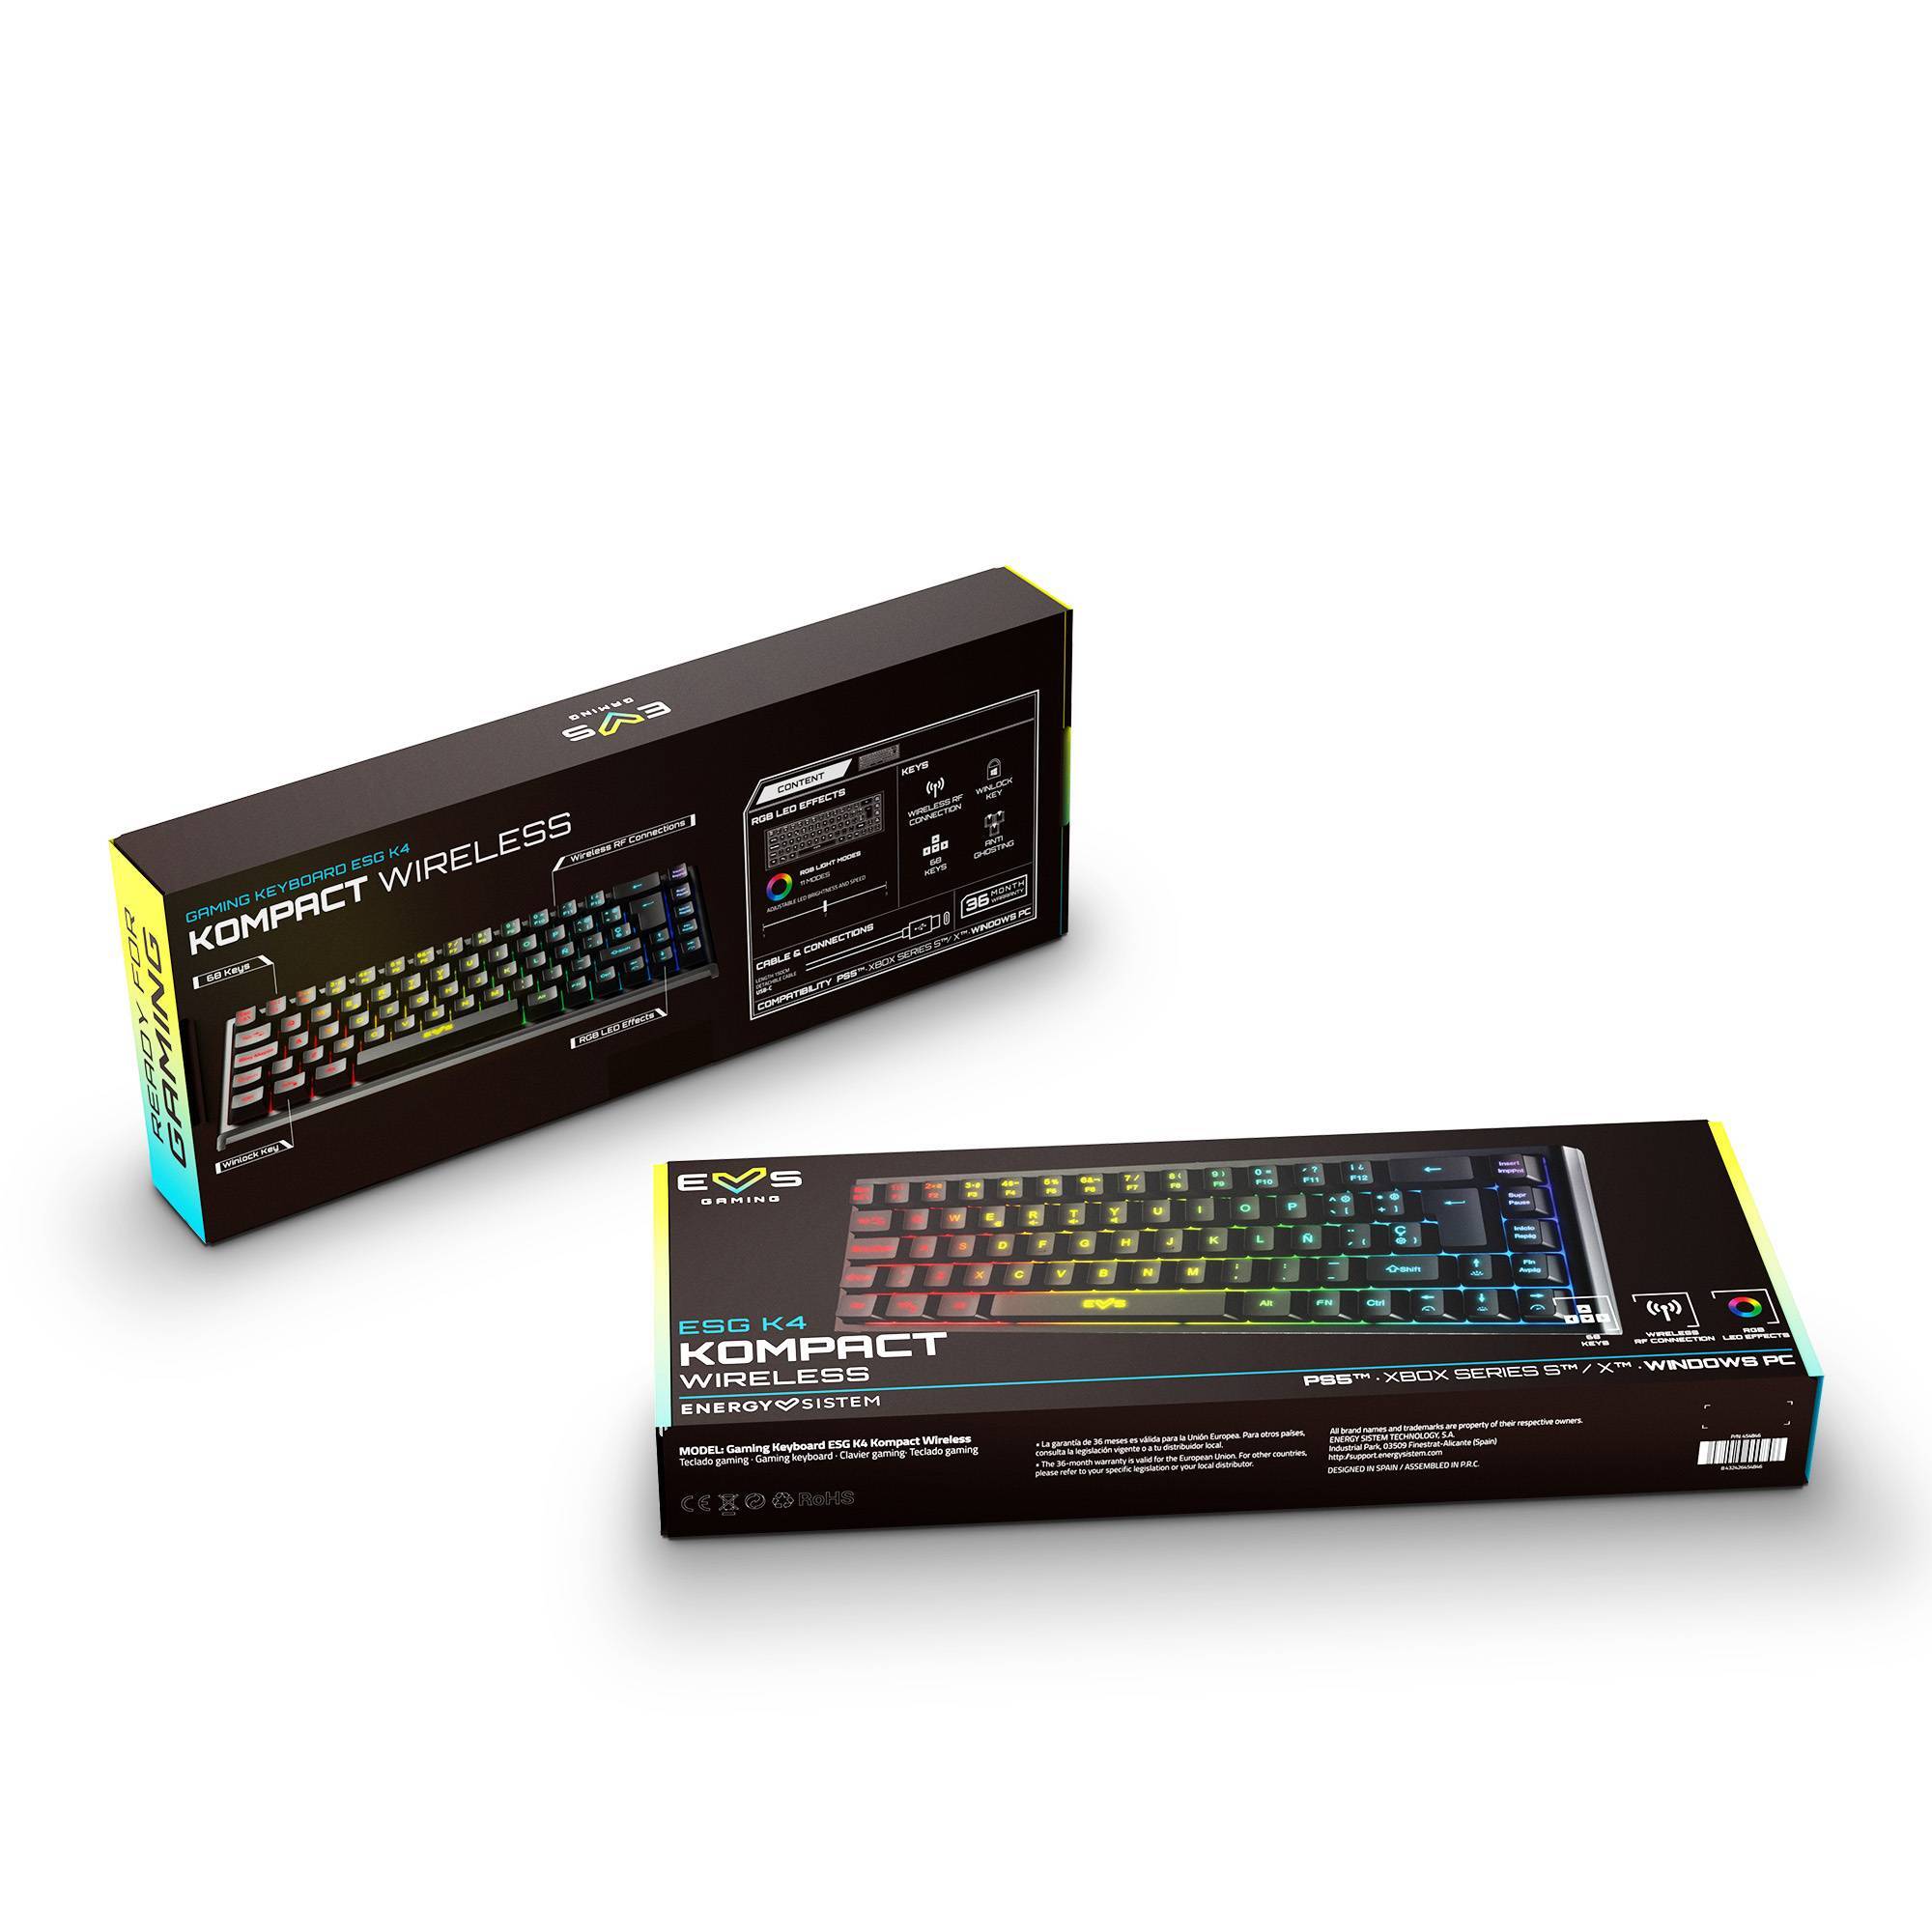 Packaging del Gaming Keyboard ESG K4 KOMPACT-WIRELESS